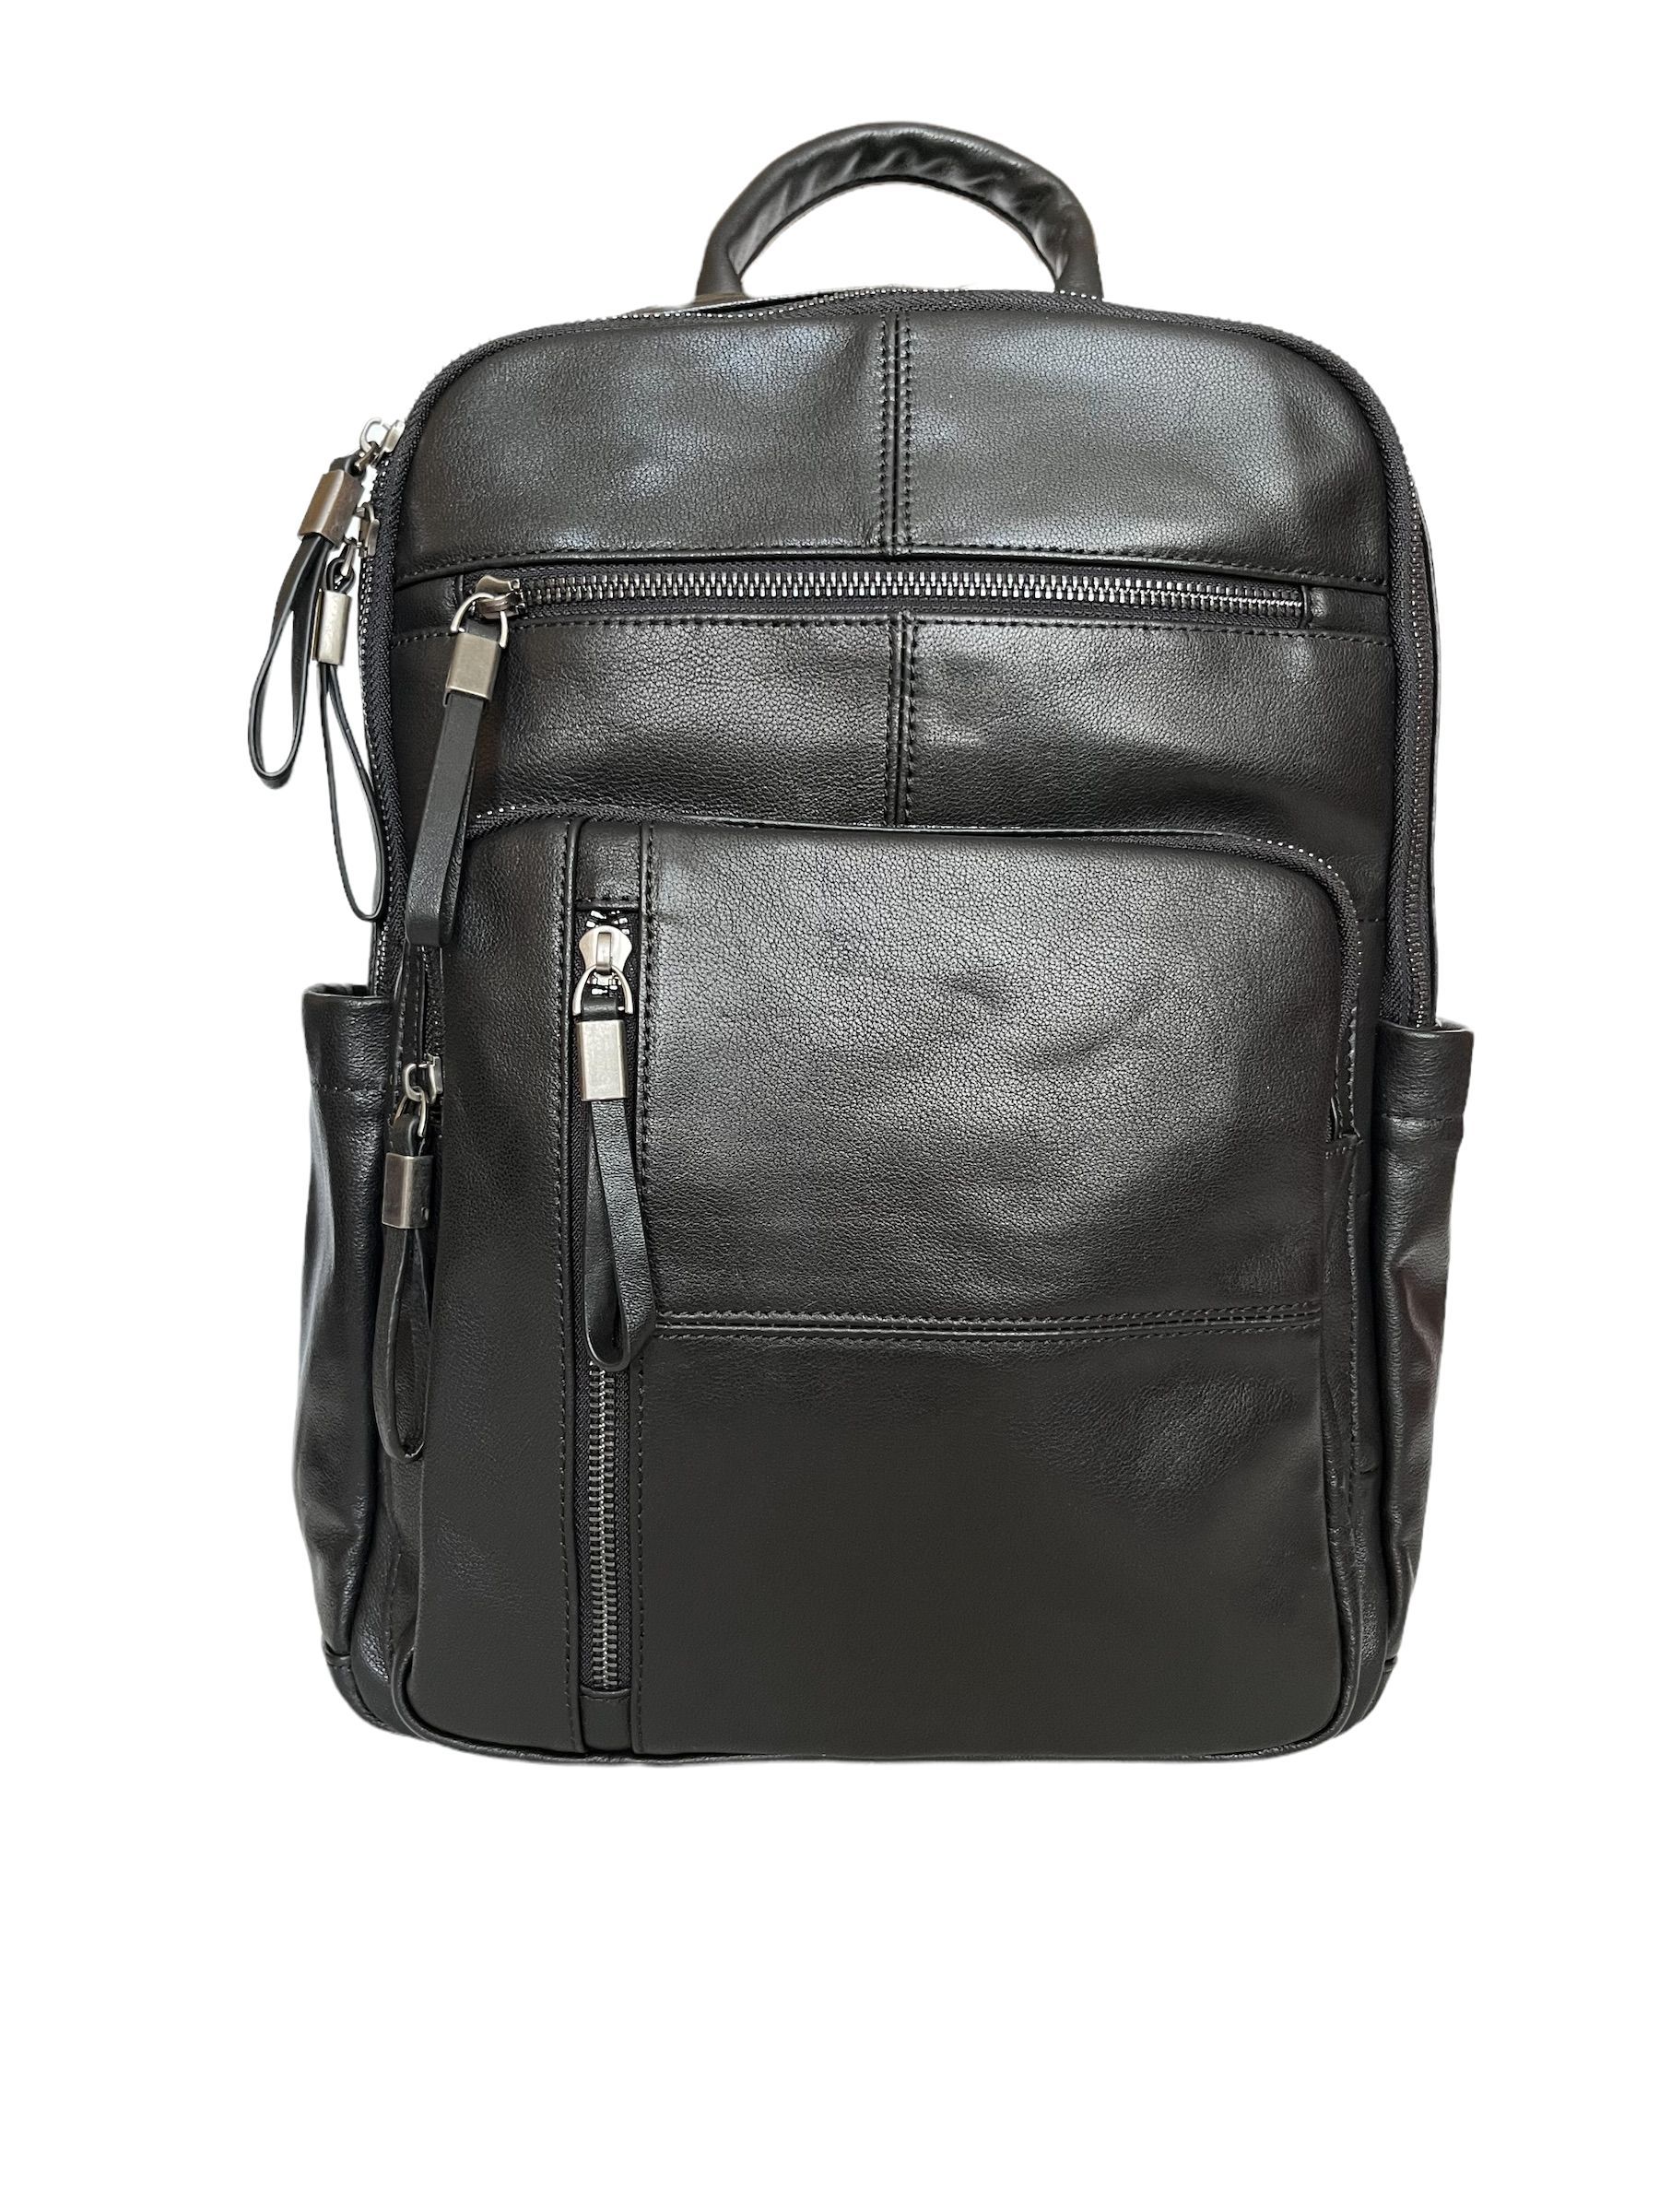 Рюкзак Capri CAP-80-8221-RM черный, 38x27x15 см